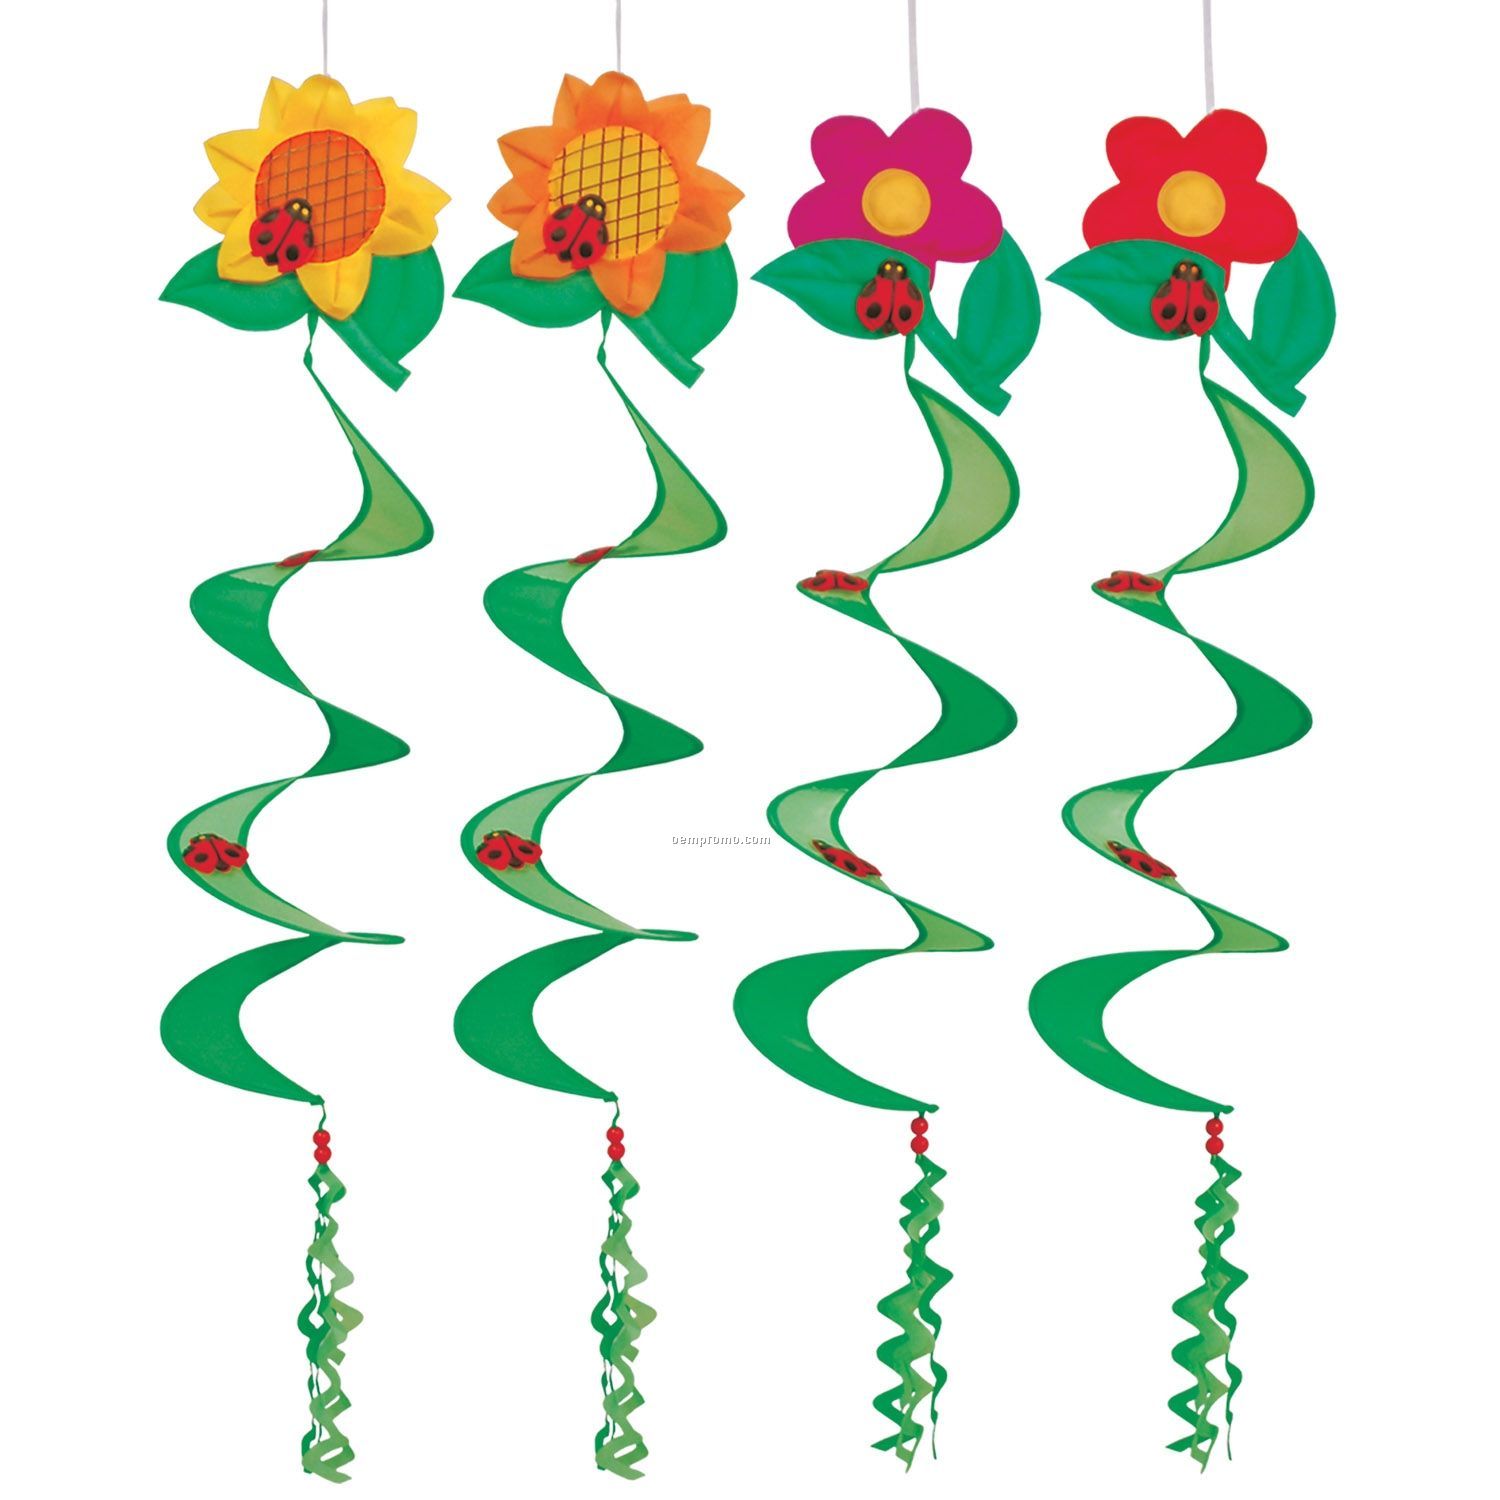 Flower Wind Spinners